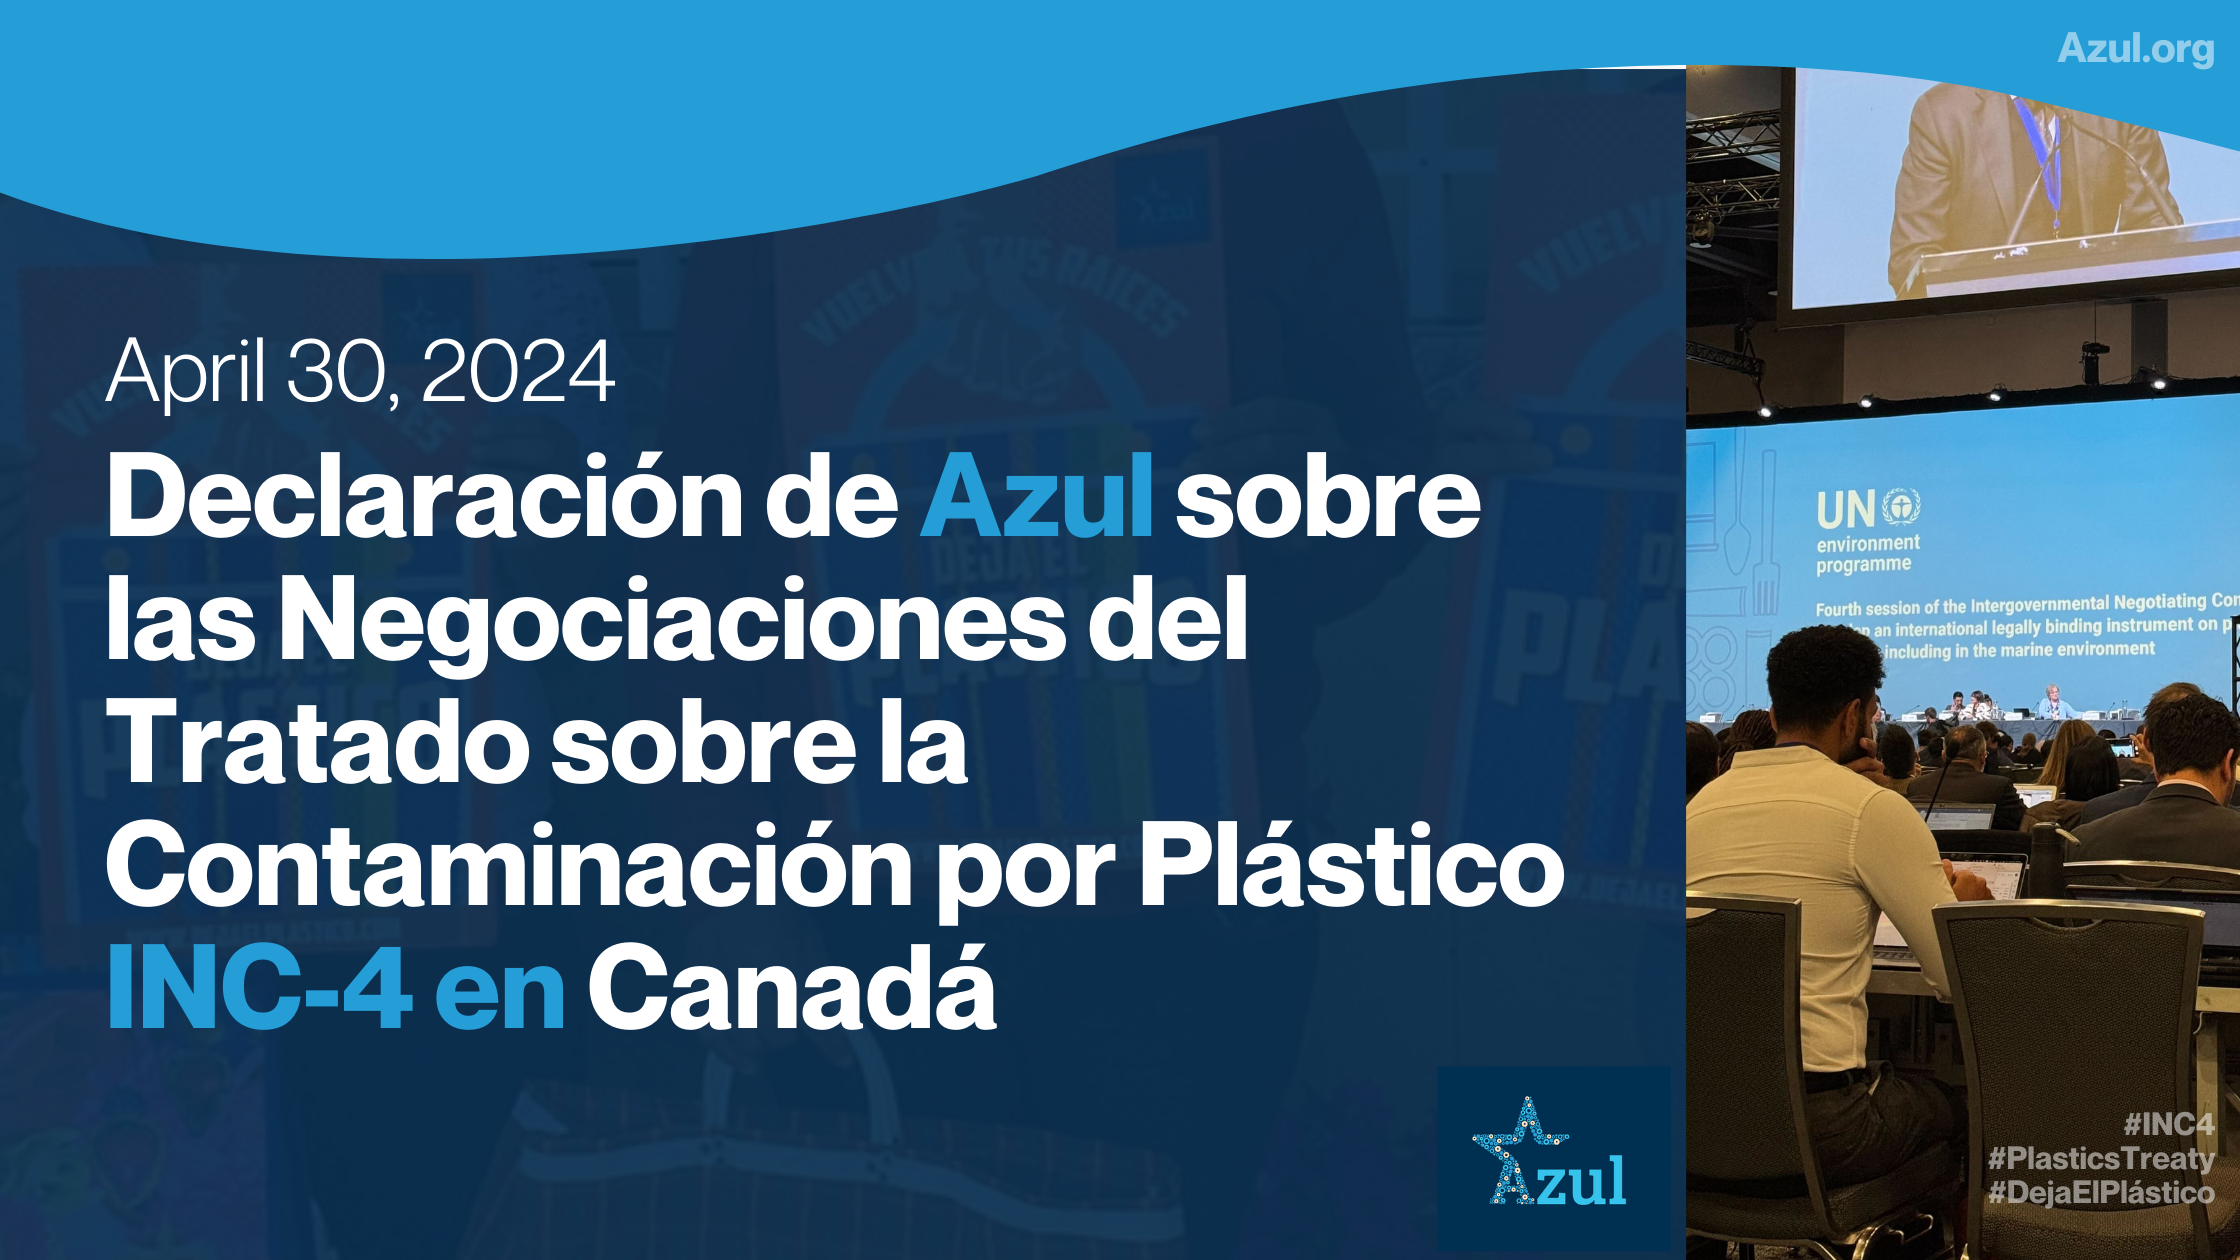 Declaración de Azul sobre las Negociaciones del Tratado sobre la Contaminación por Plástico INC-4 en Canadá